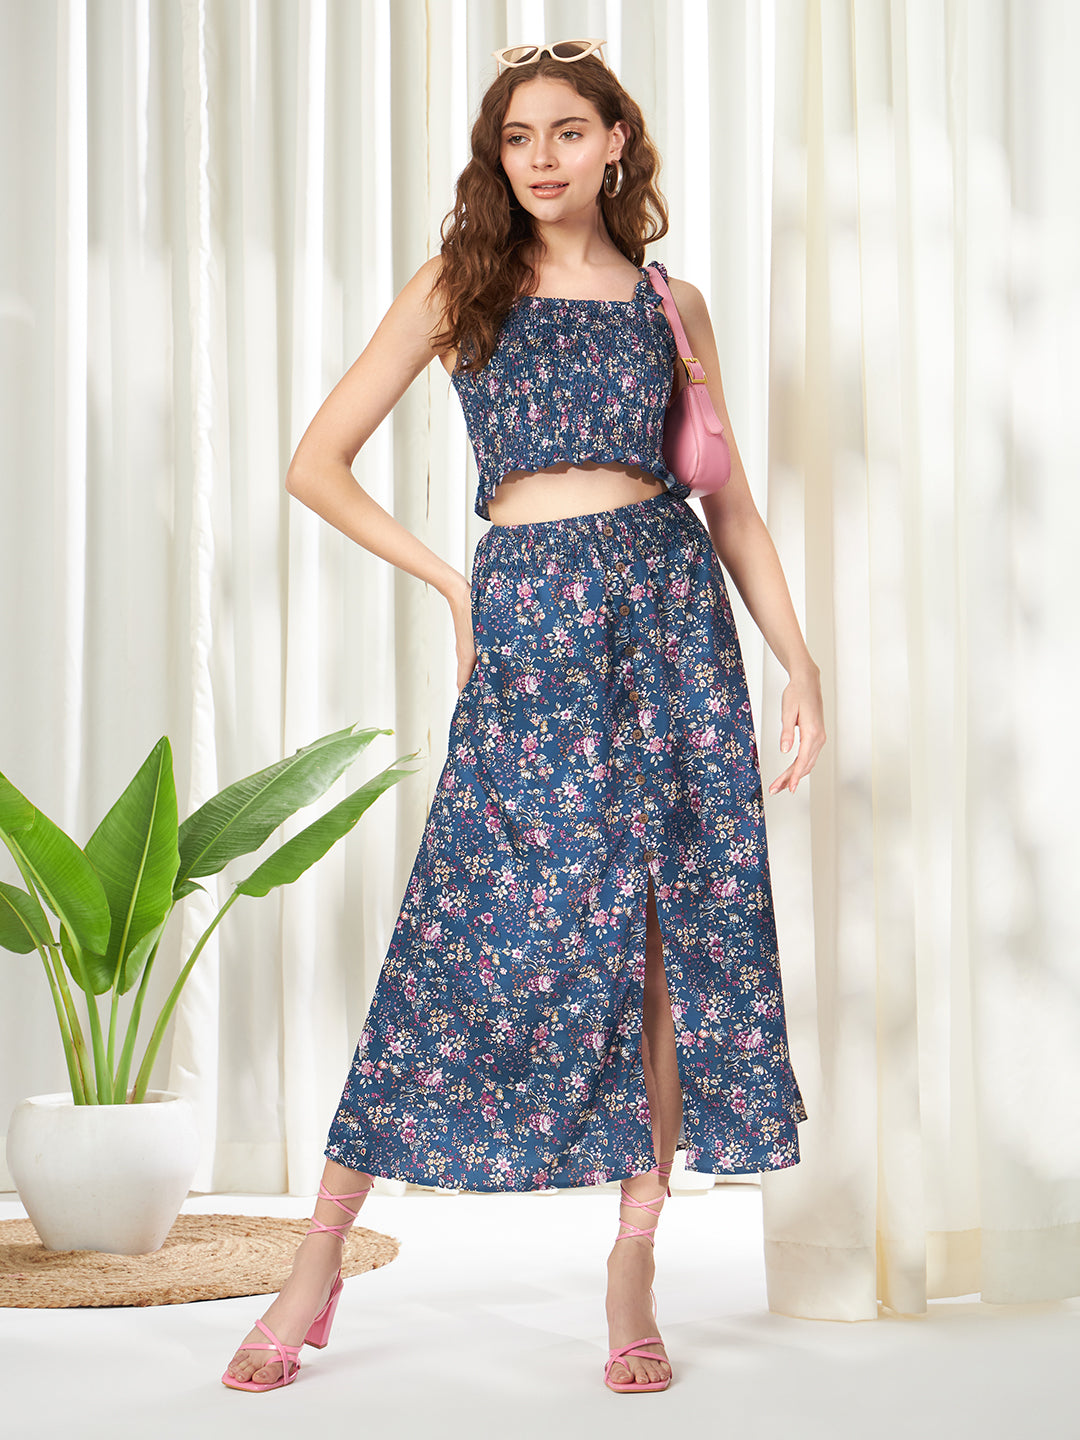 Floral Print Cami Top & Skirt Set